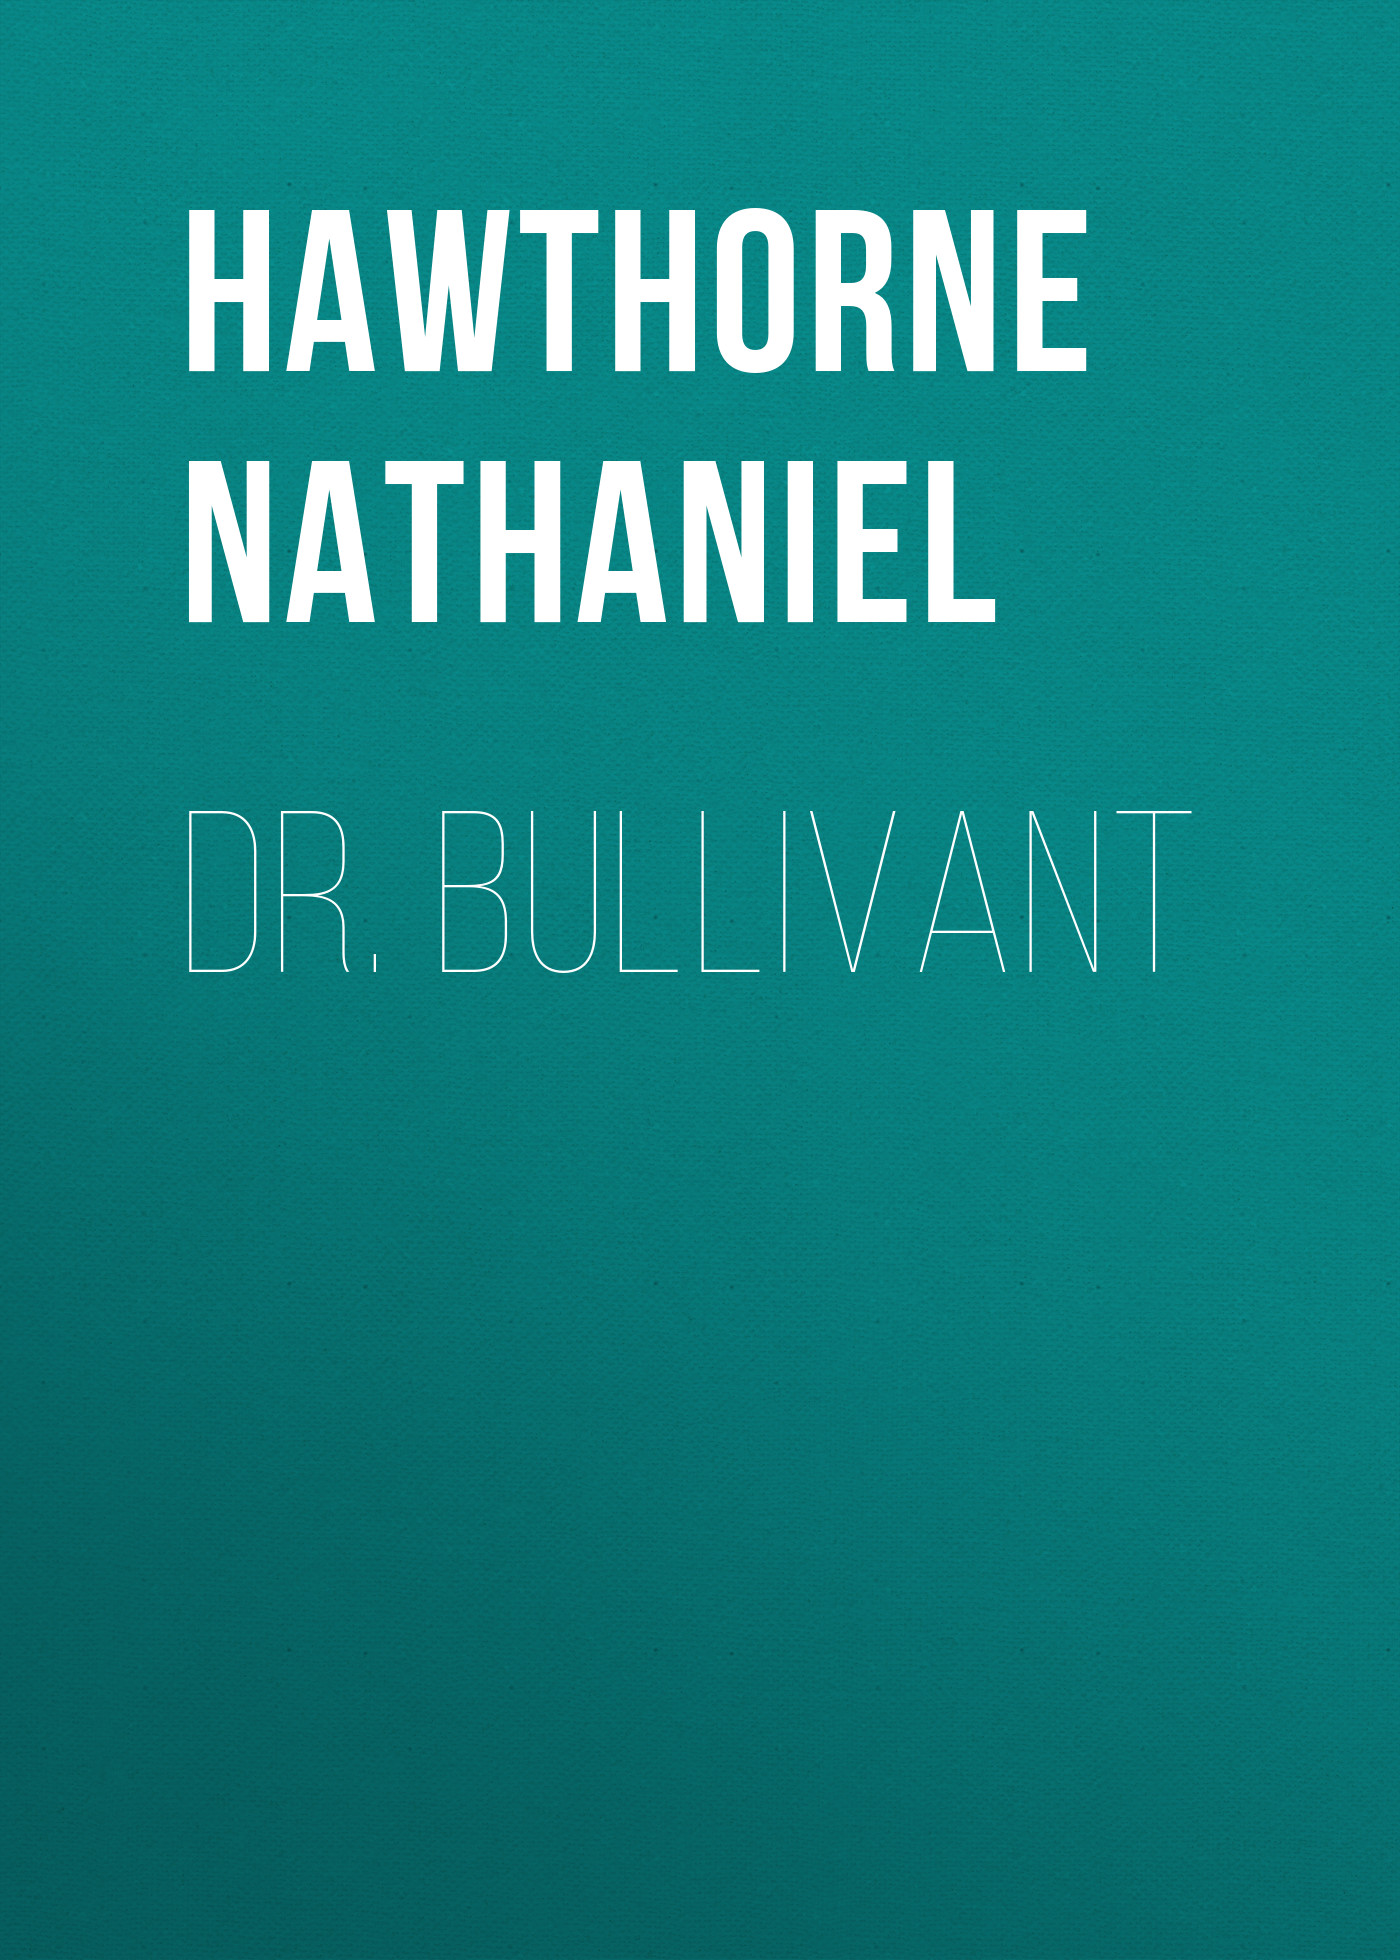 Книга Dr. Bullivant из серии , созданная Nathaniel Hawthorne, может относится к жанру Литература 19 века, Зарубежная старинная литература, Зарубежная классика. Стоимость электронной книги Dr. Bullivant с идентификатором 25560948 составляет 0 руб.